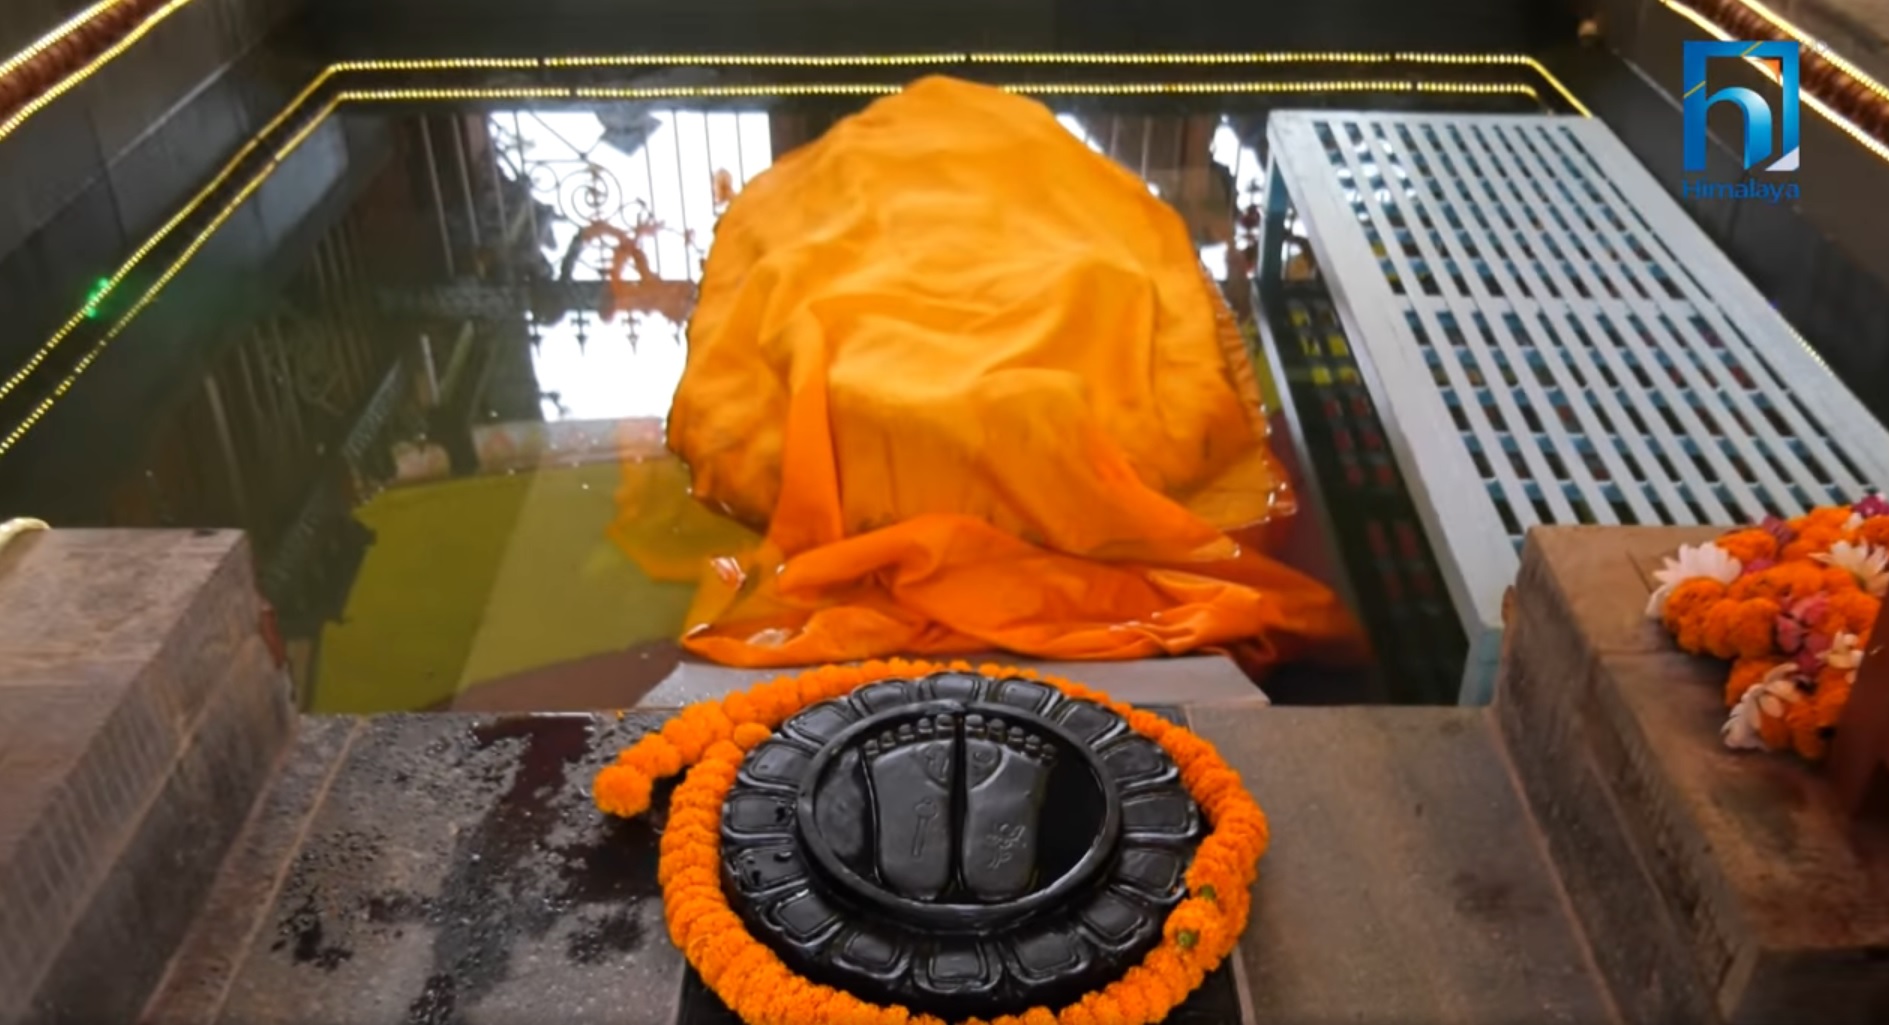 फेरियो म्हेपी मन्दिरको स्वरुप, नारायणको मूर्ति प्रतिस्थापन (भिडियो रिपोर्टसहित)